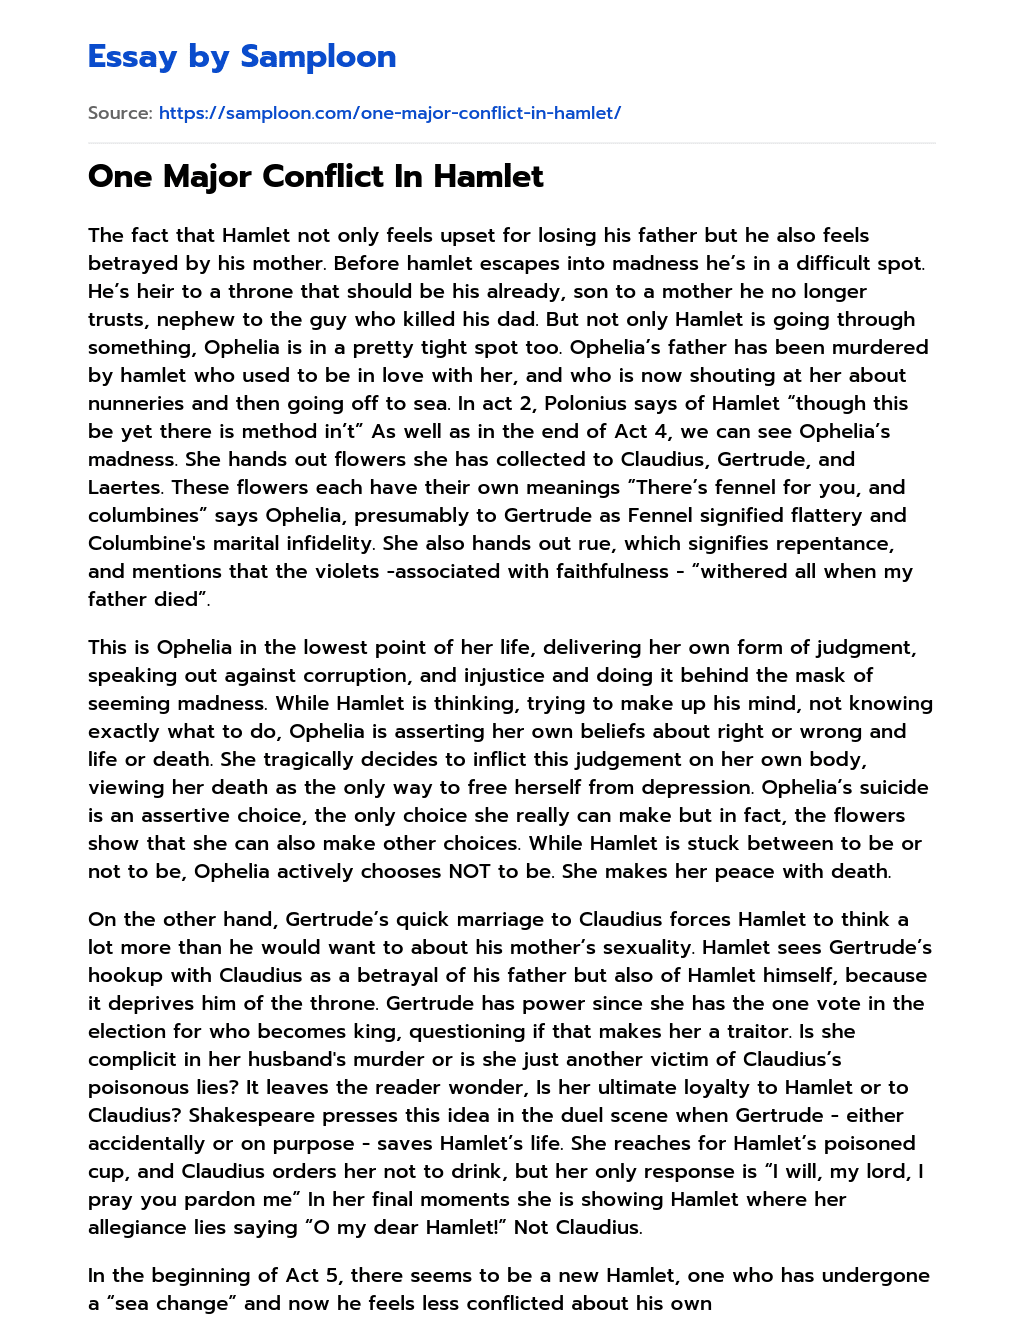 One Major Conflict In Hamlet essay